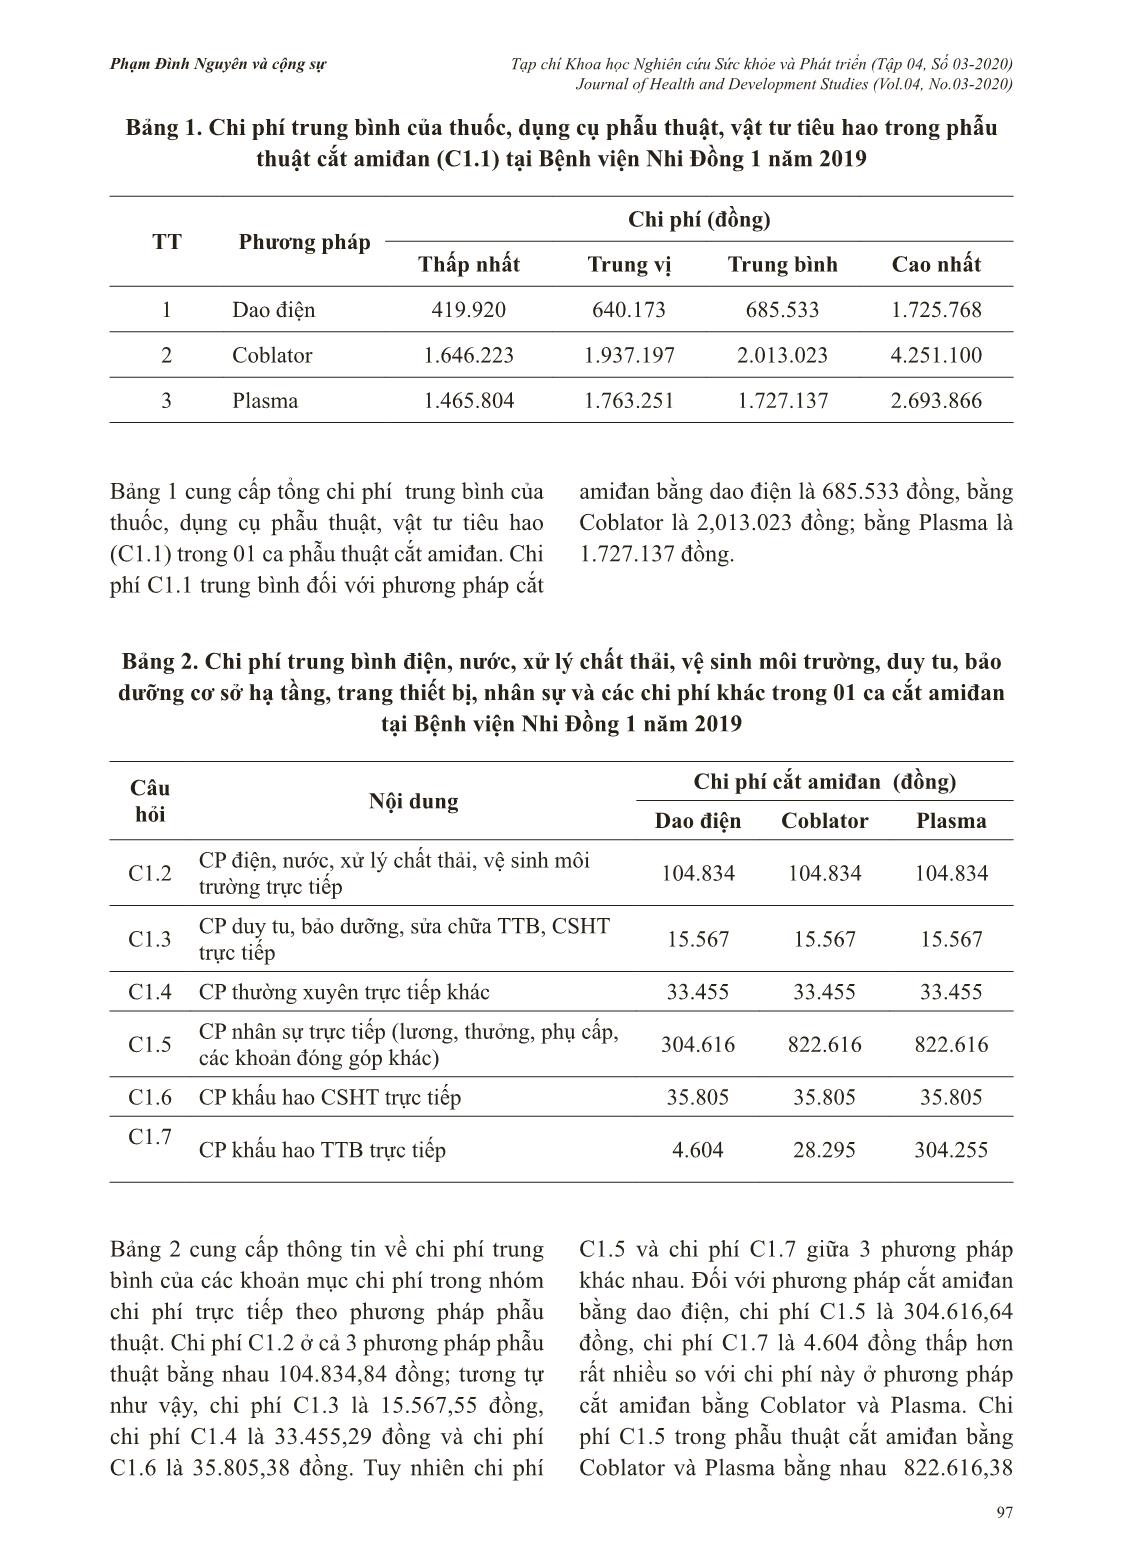 Chi phí phẫu thuật cắt amiđan tại bệnh viện Nhi Đồng 1 năm 2019 trang 3